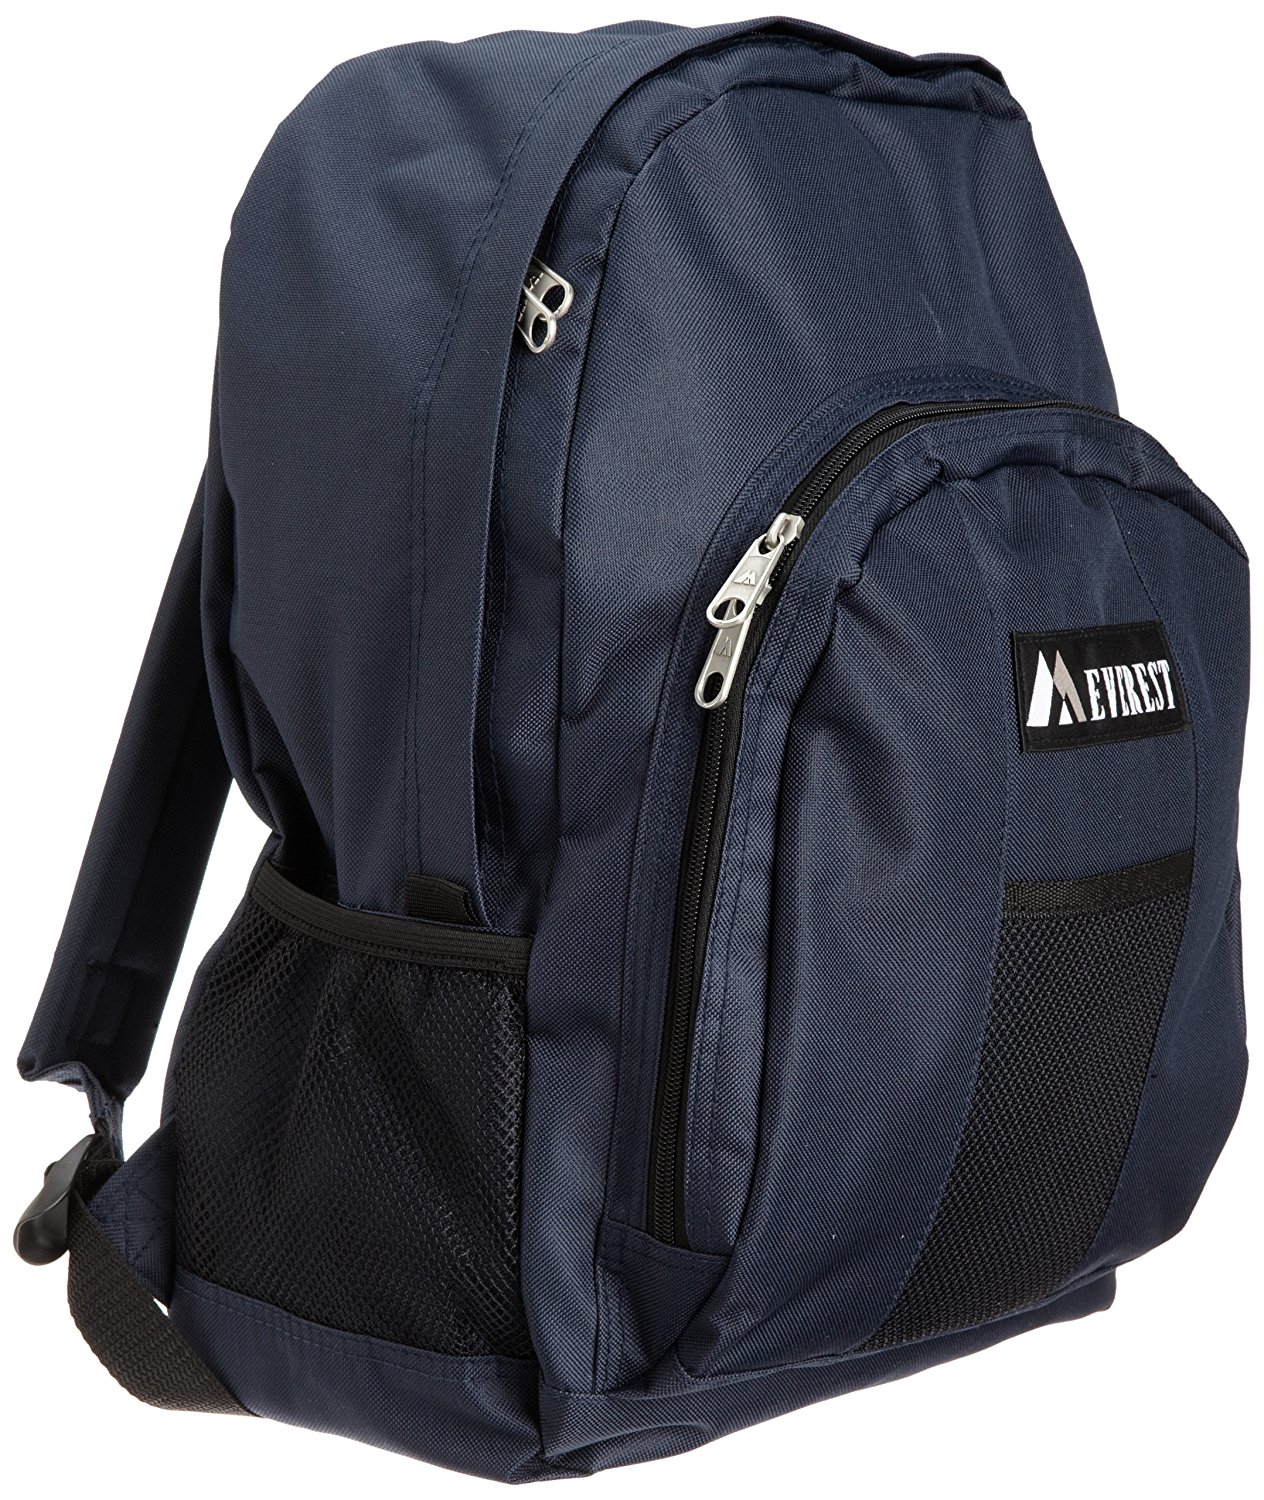 best backpack under 100